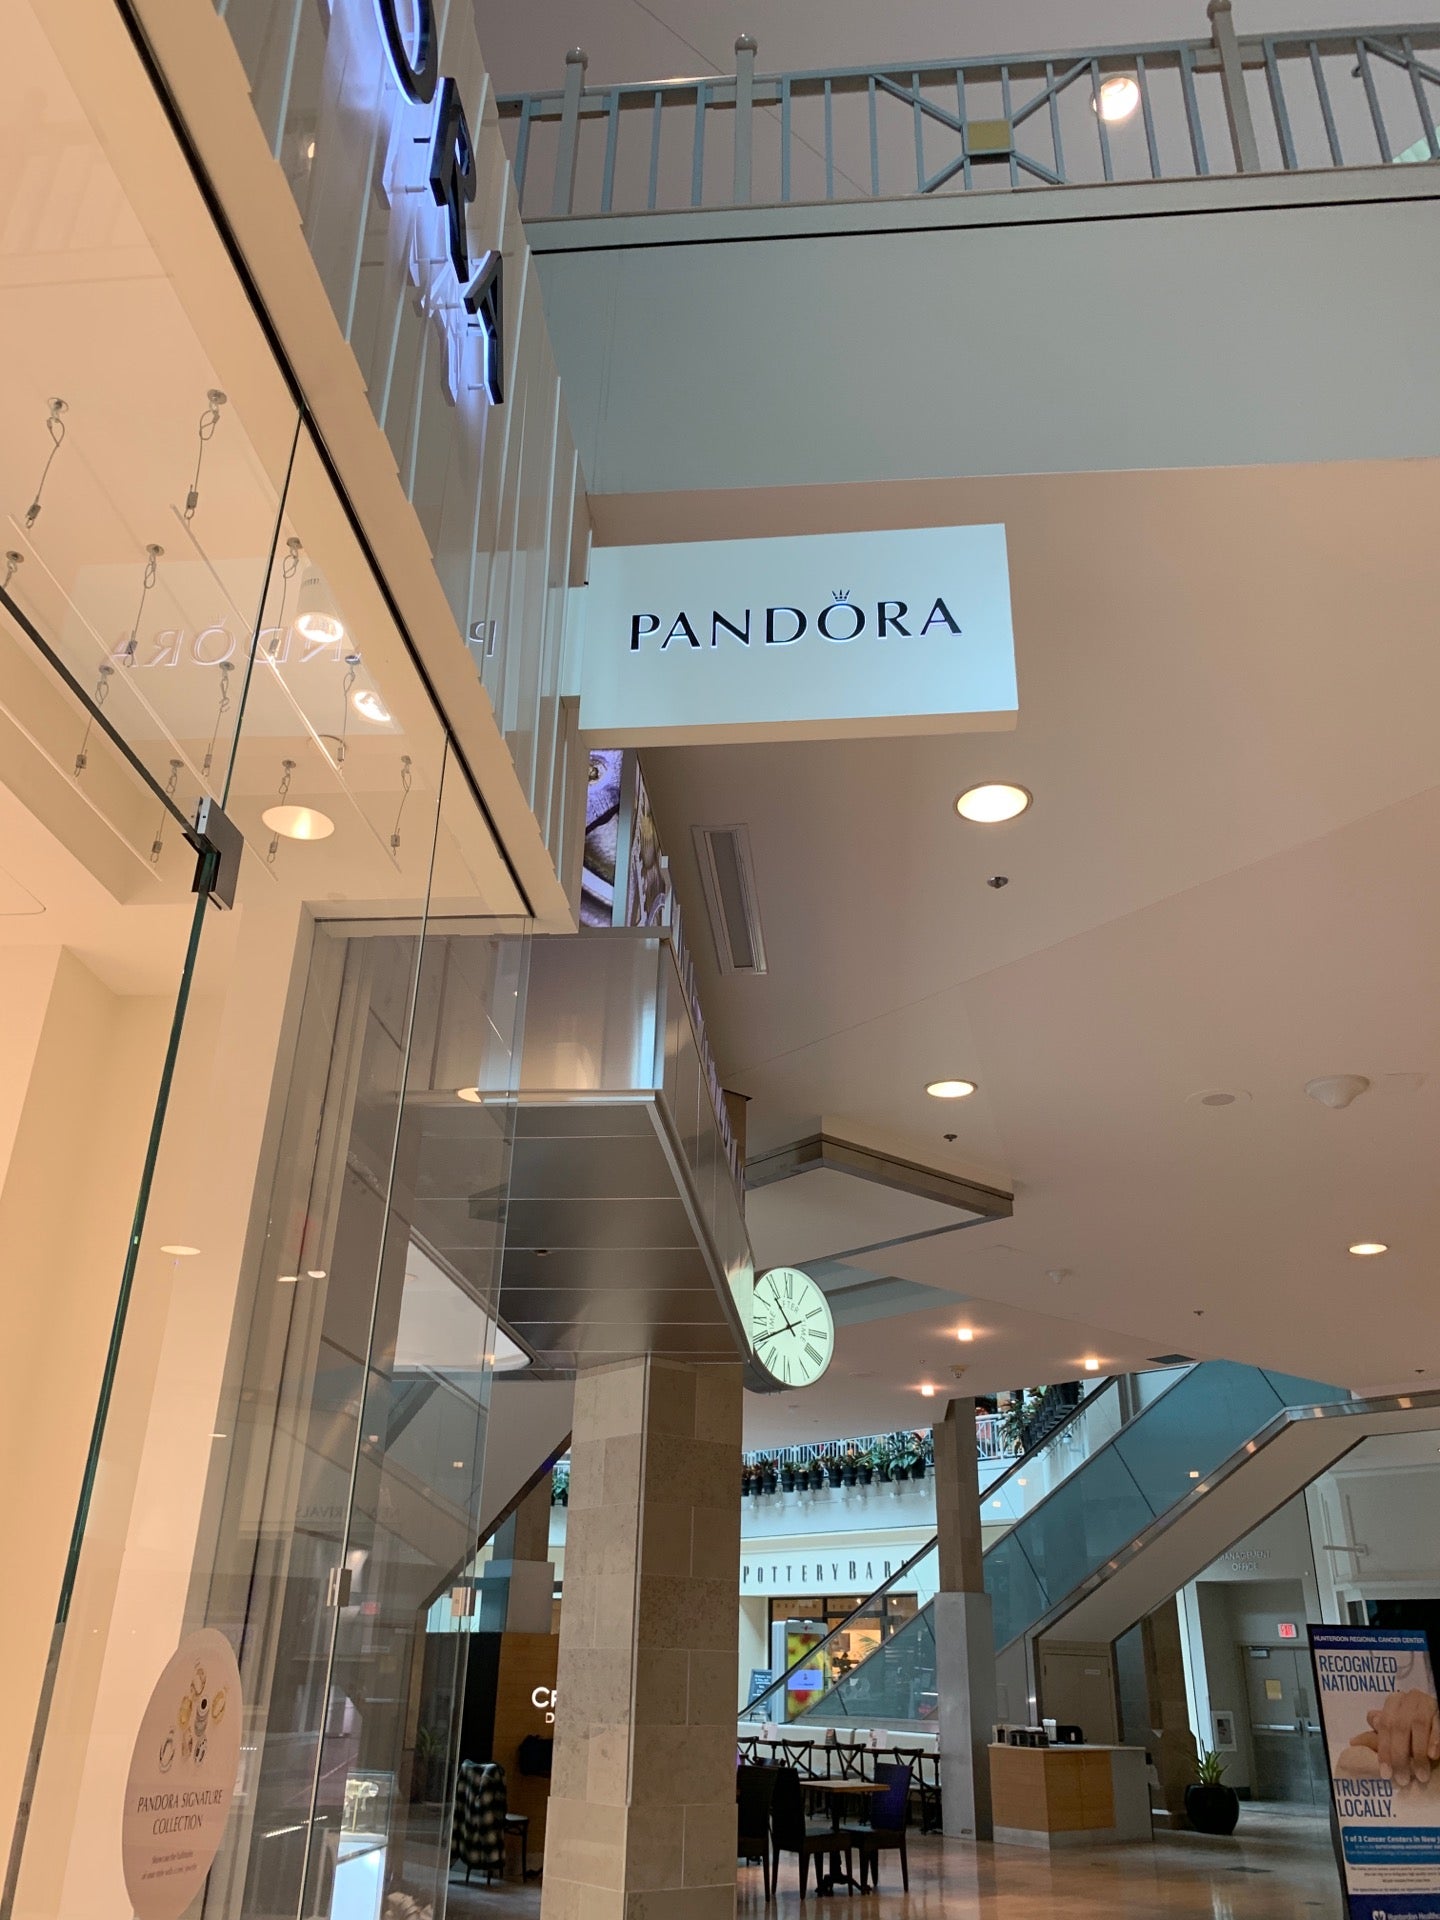 Pandora